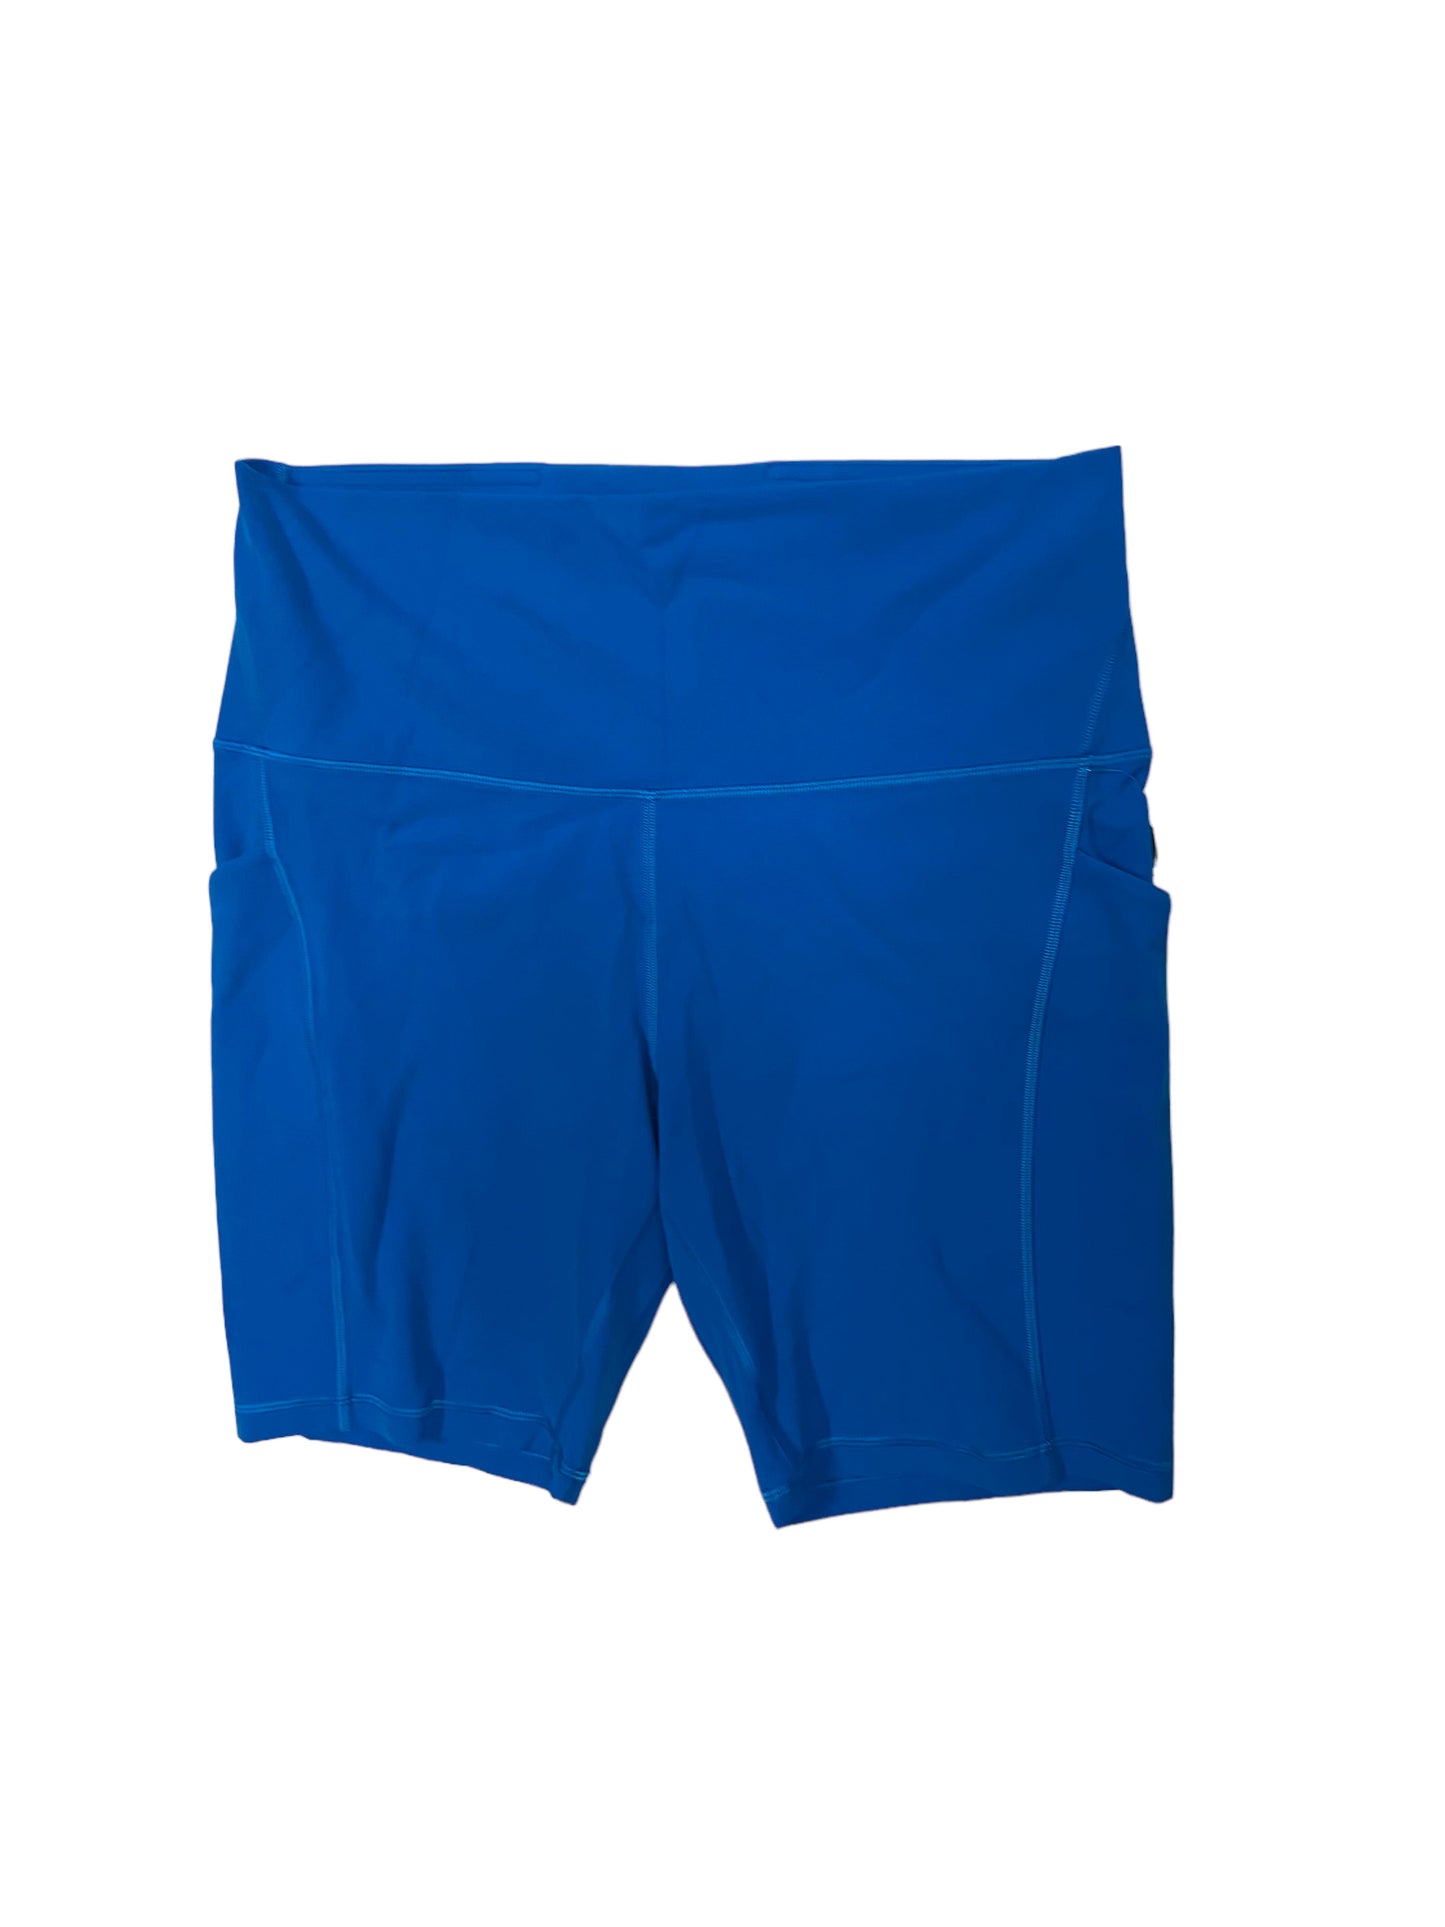 Blue Athletic Shorts Lululemon, Size 12